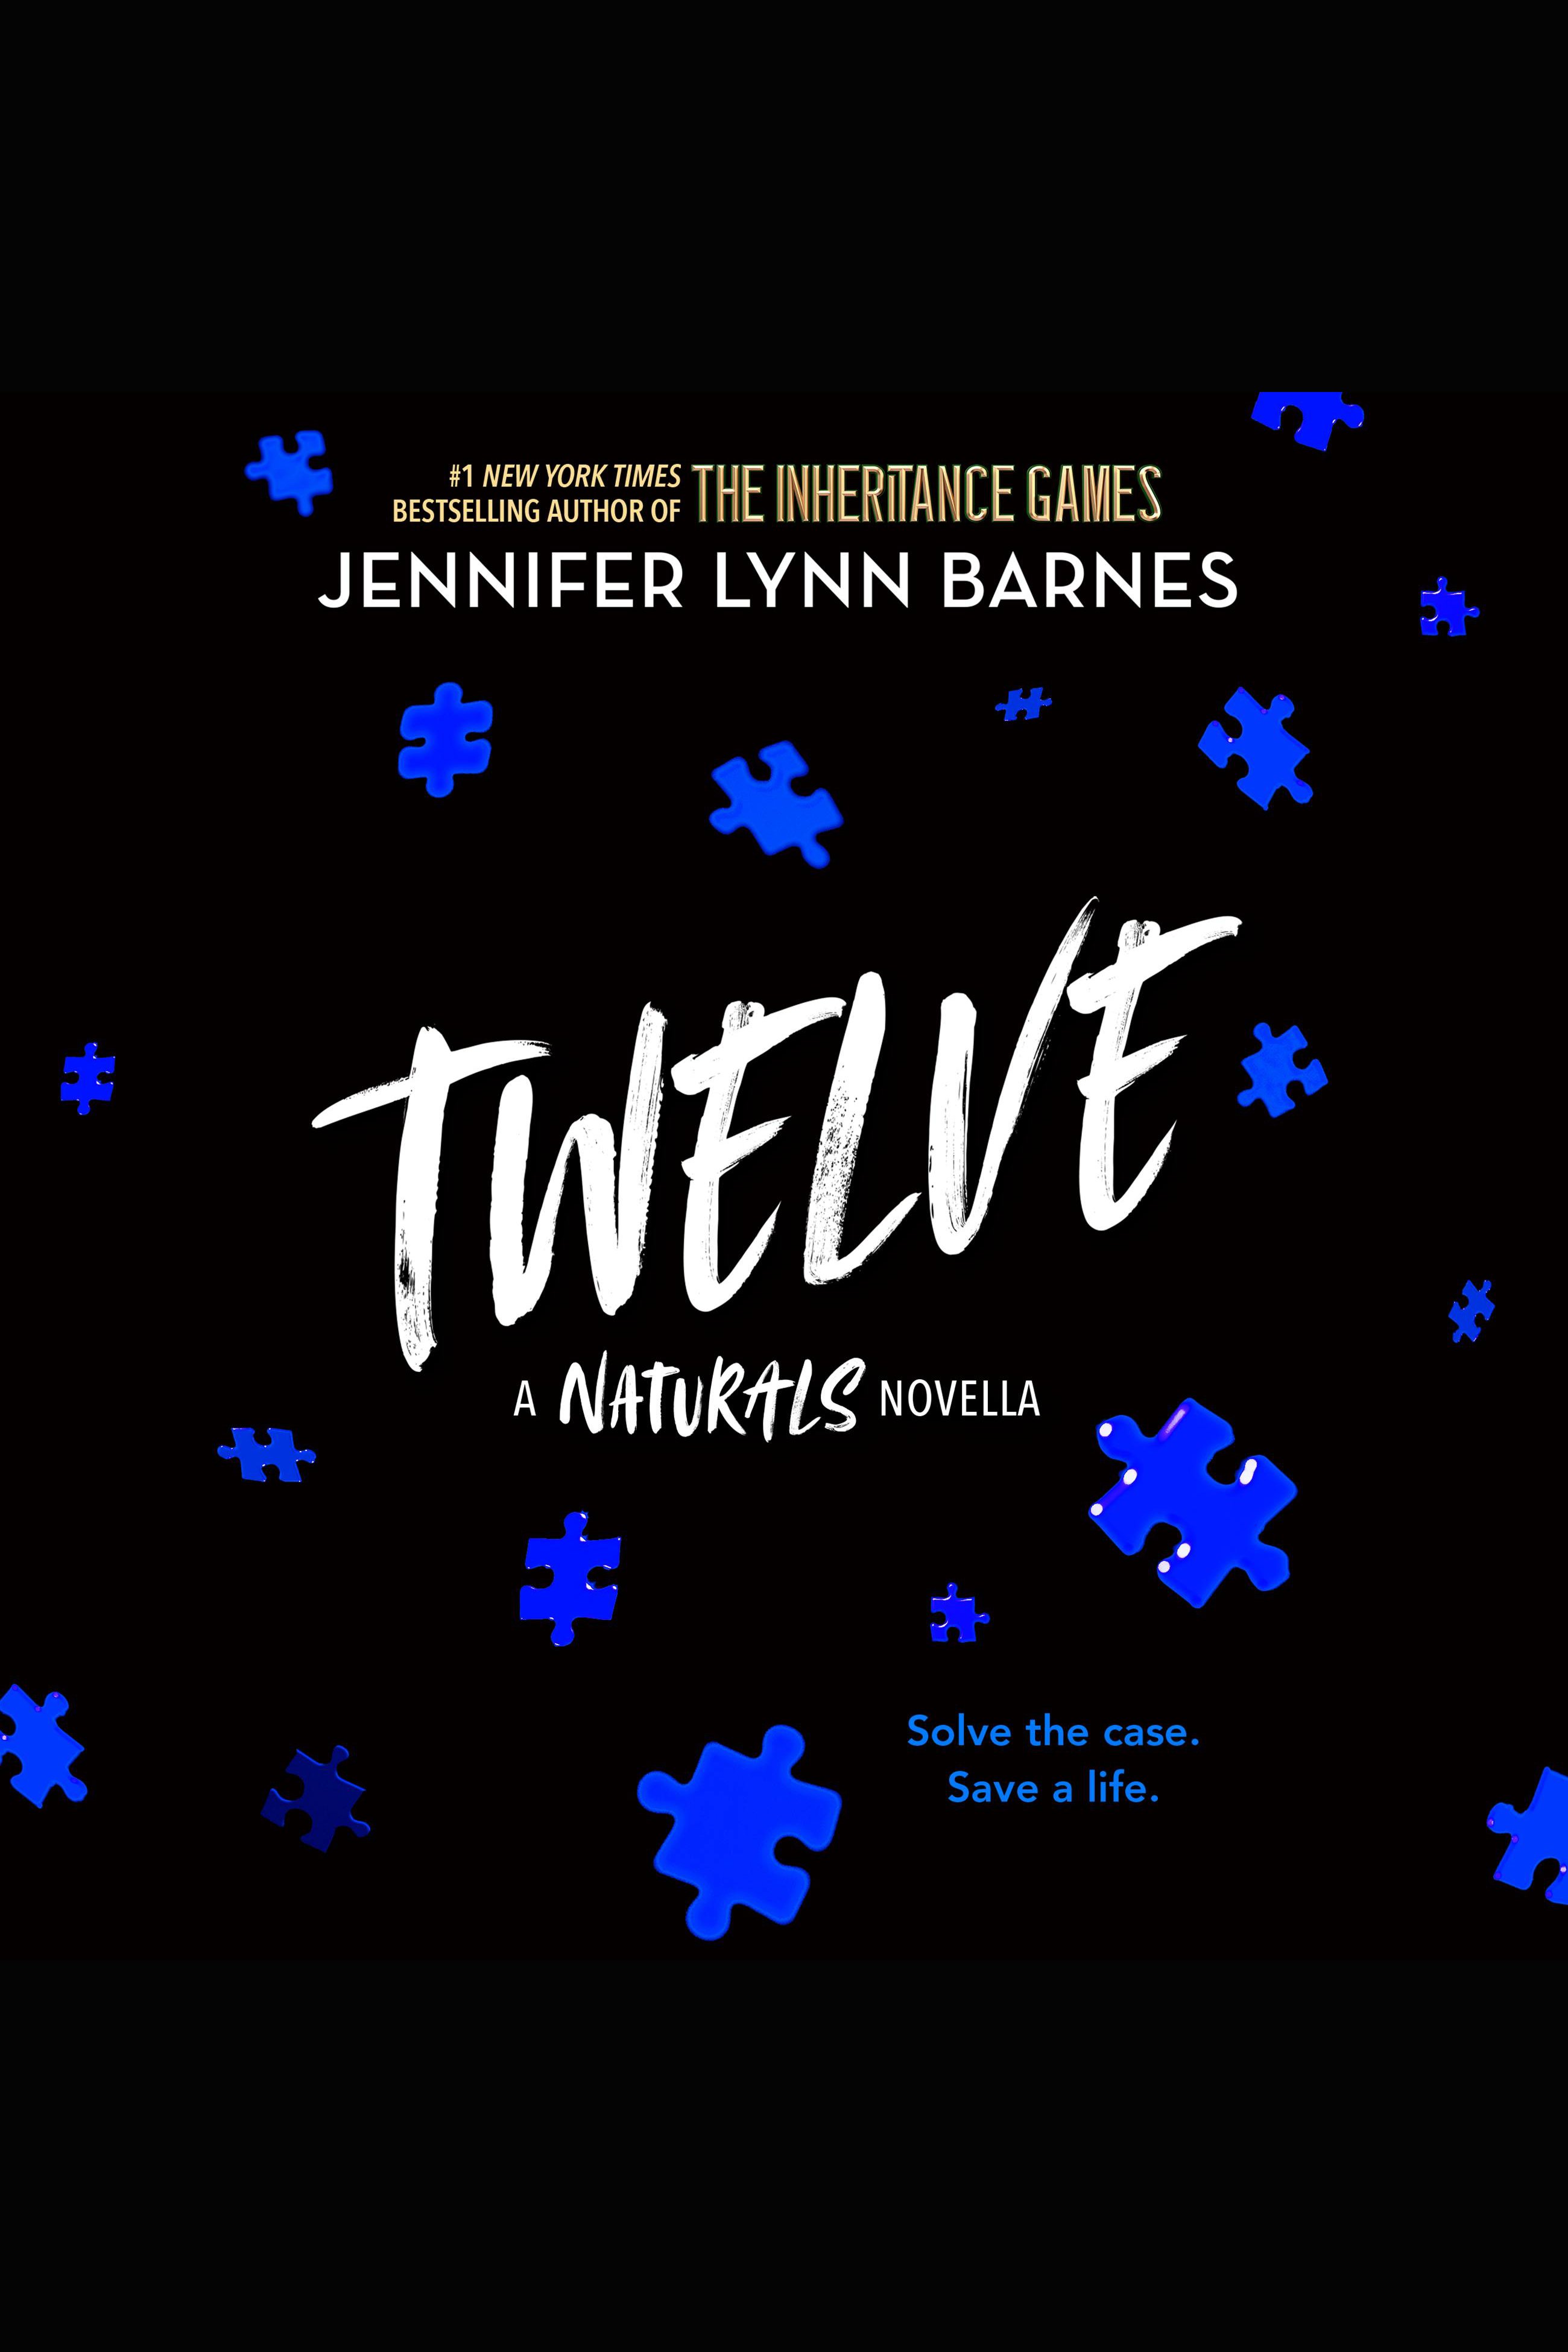 Twelve The Naturals E-novella cover image